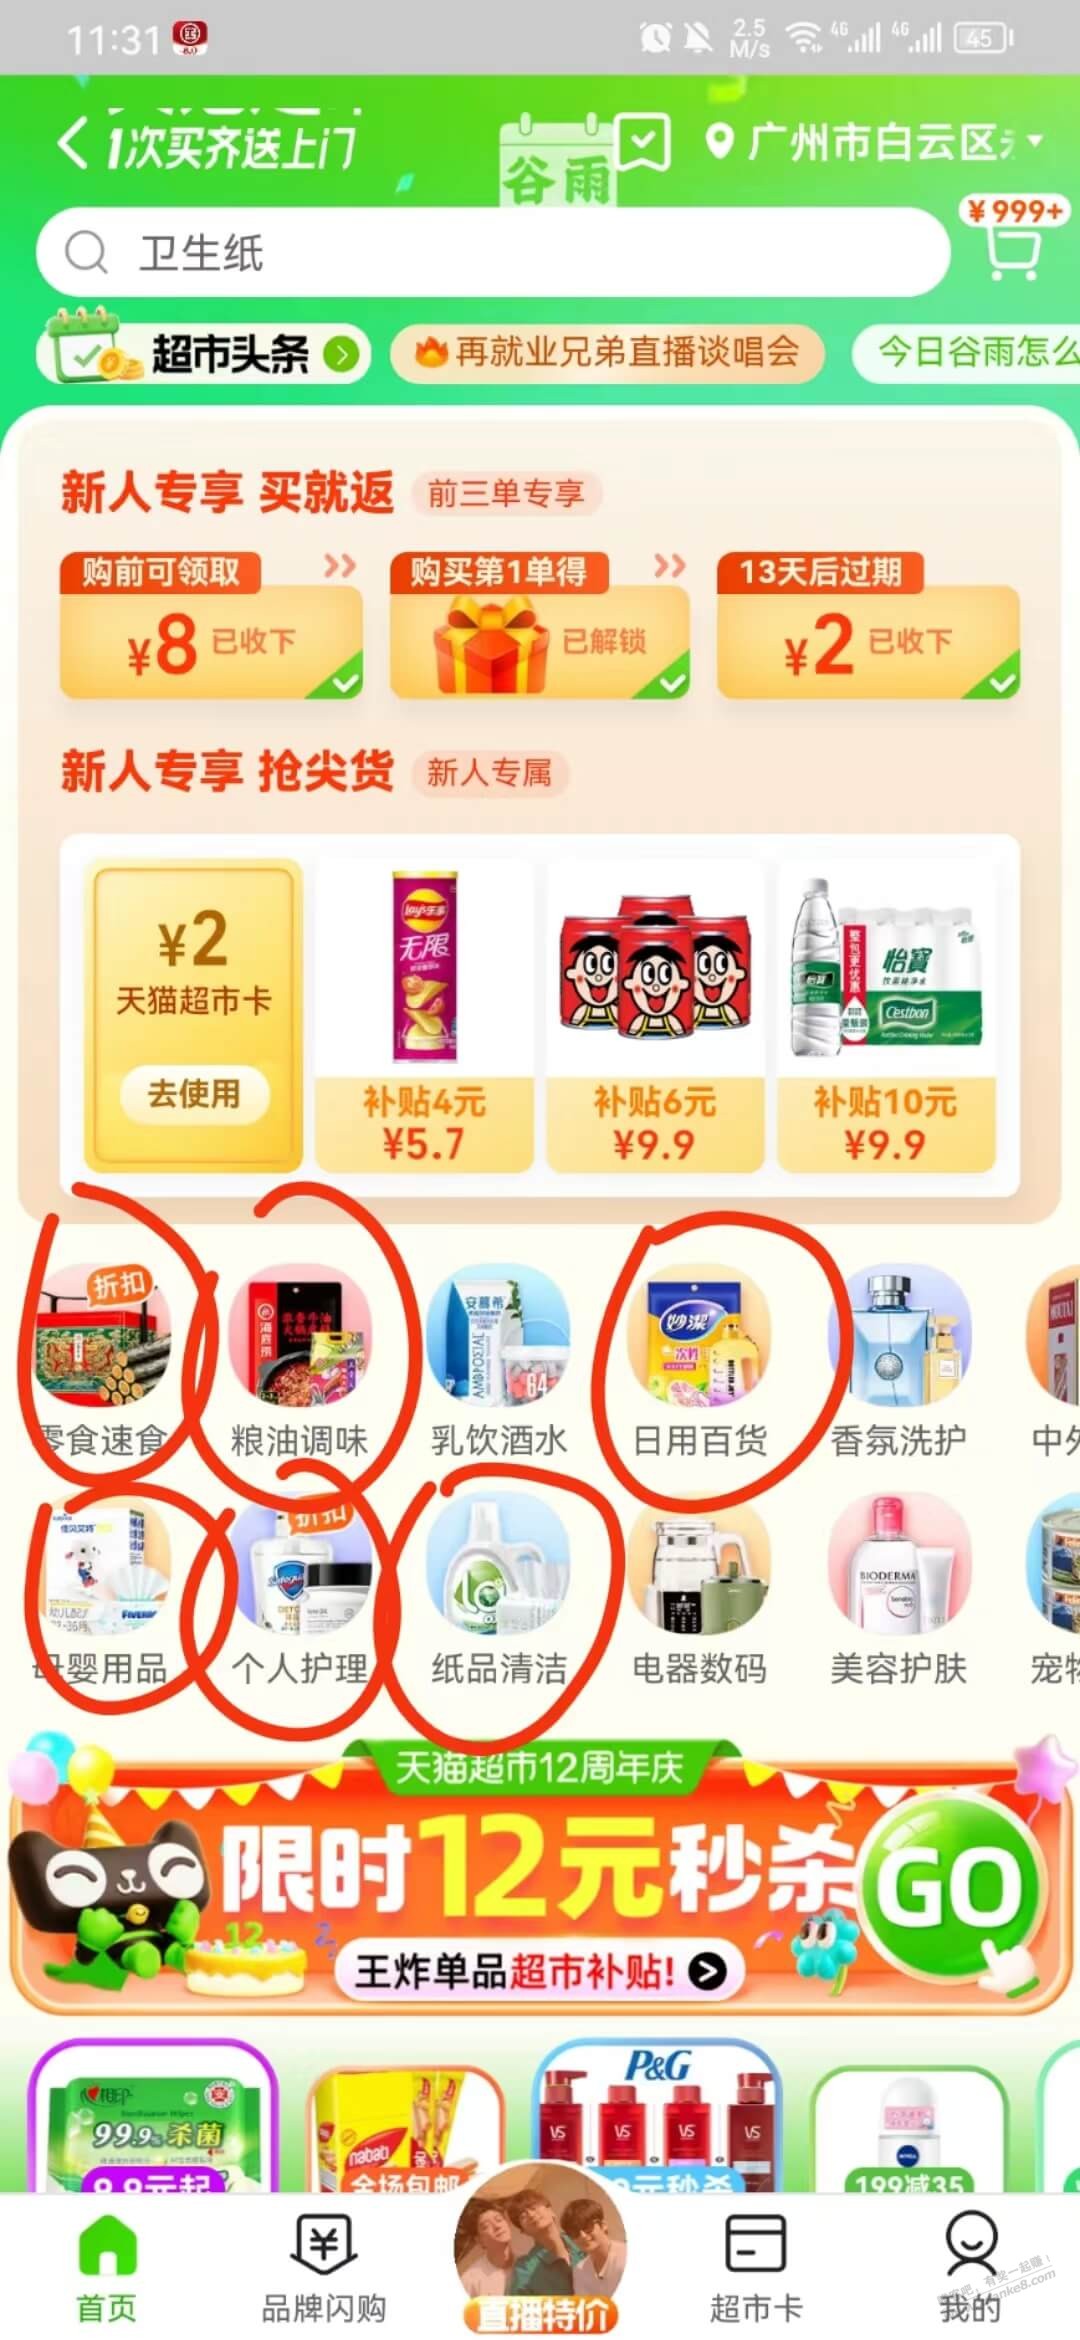 天猫超市品牌金-速领!!